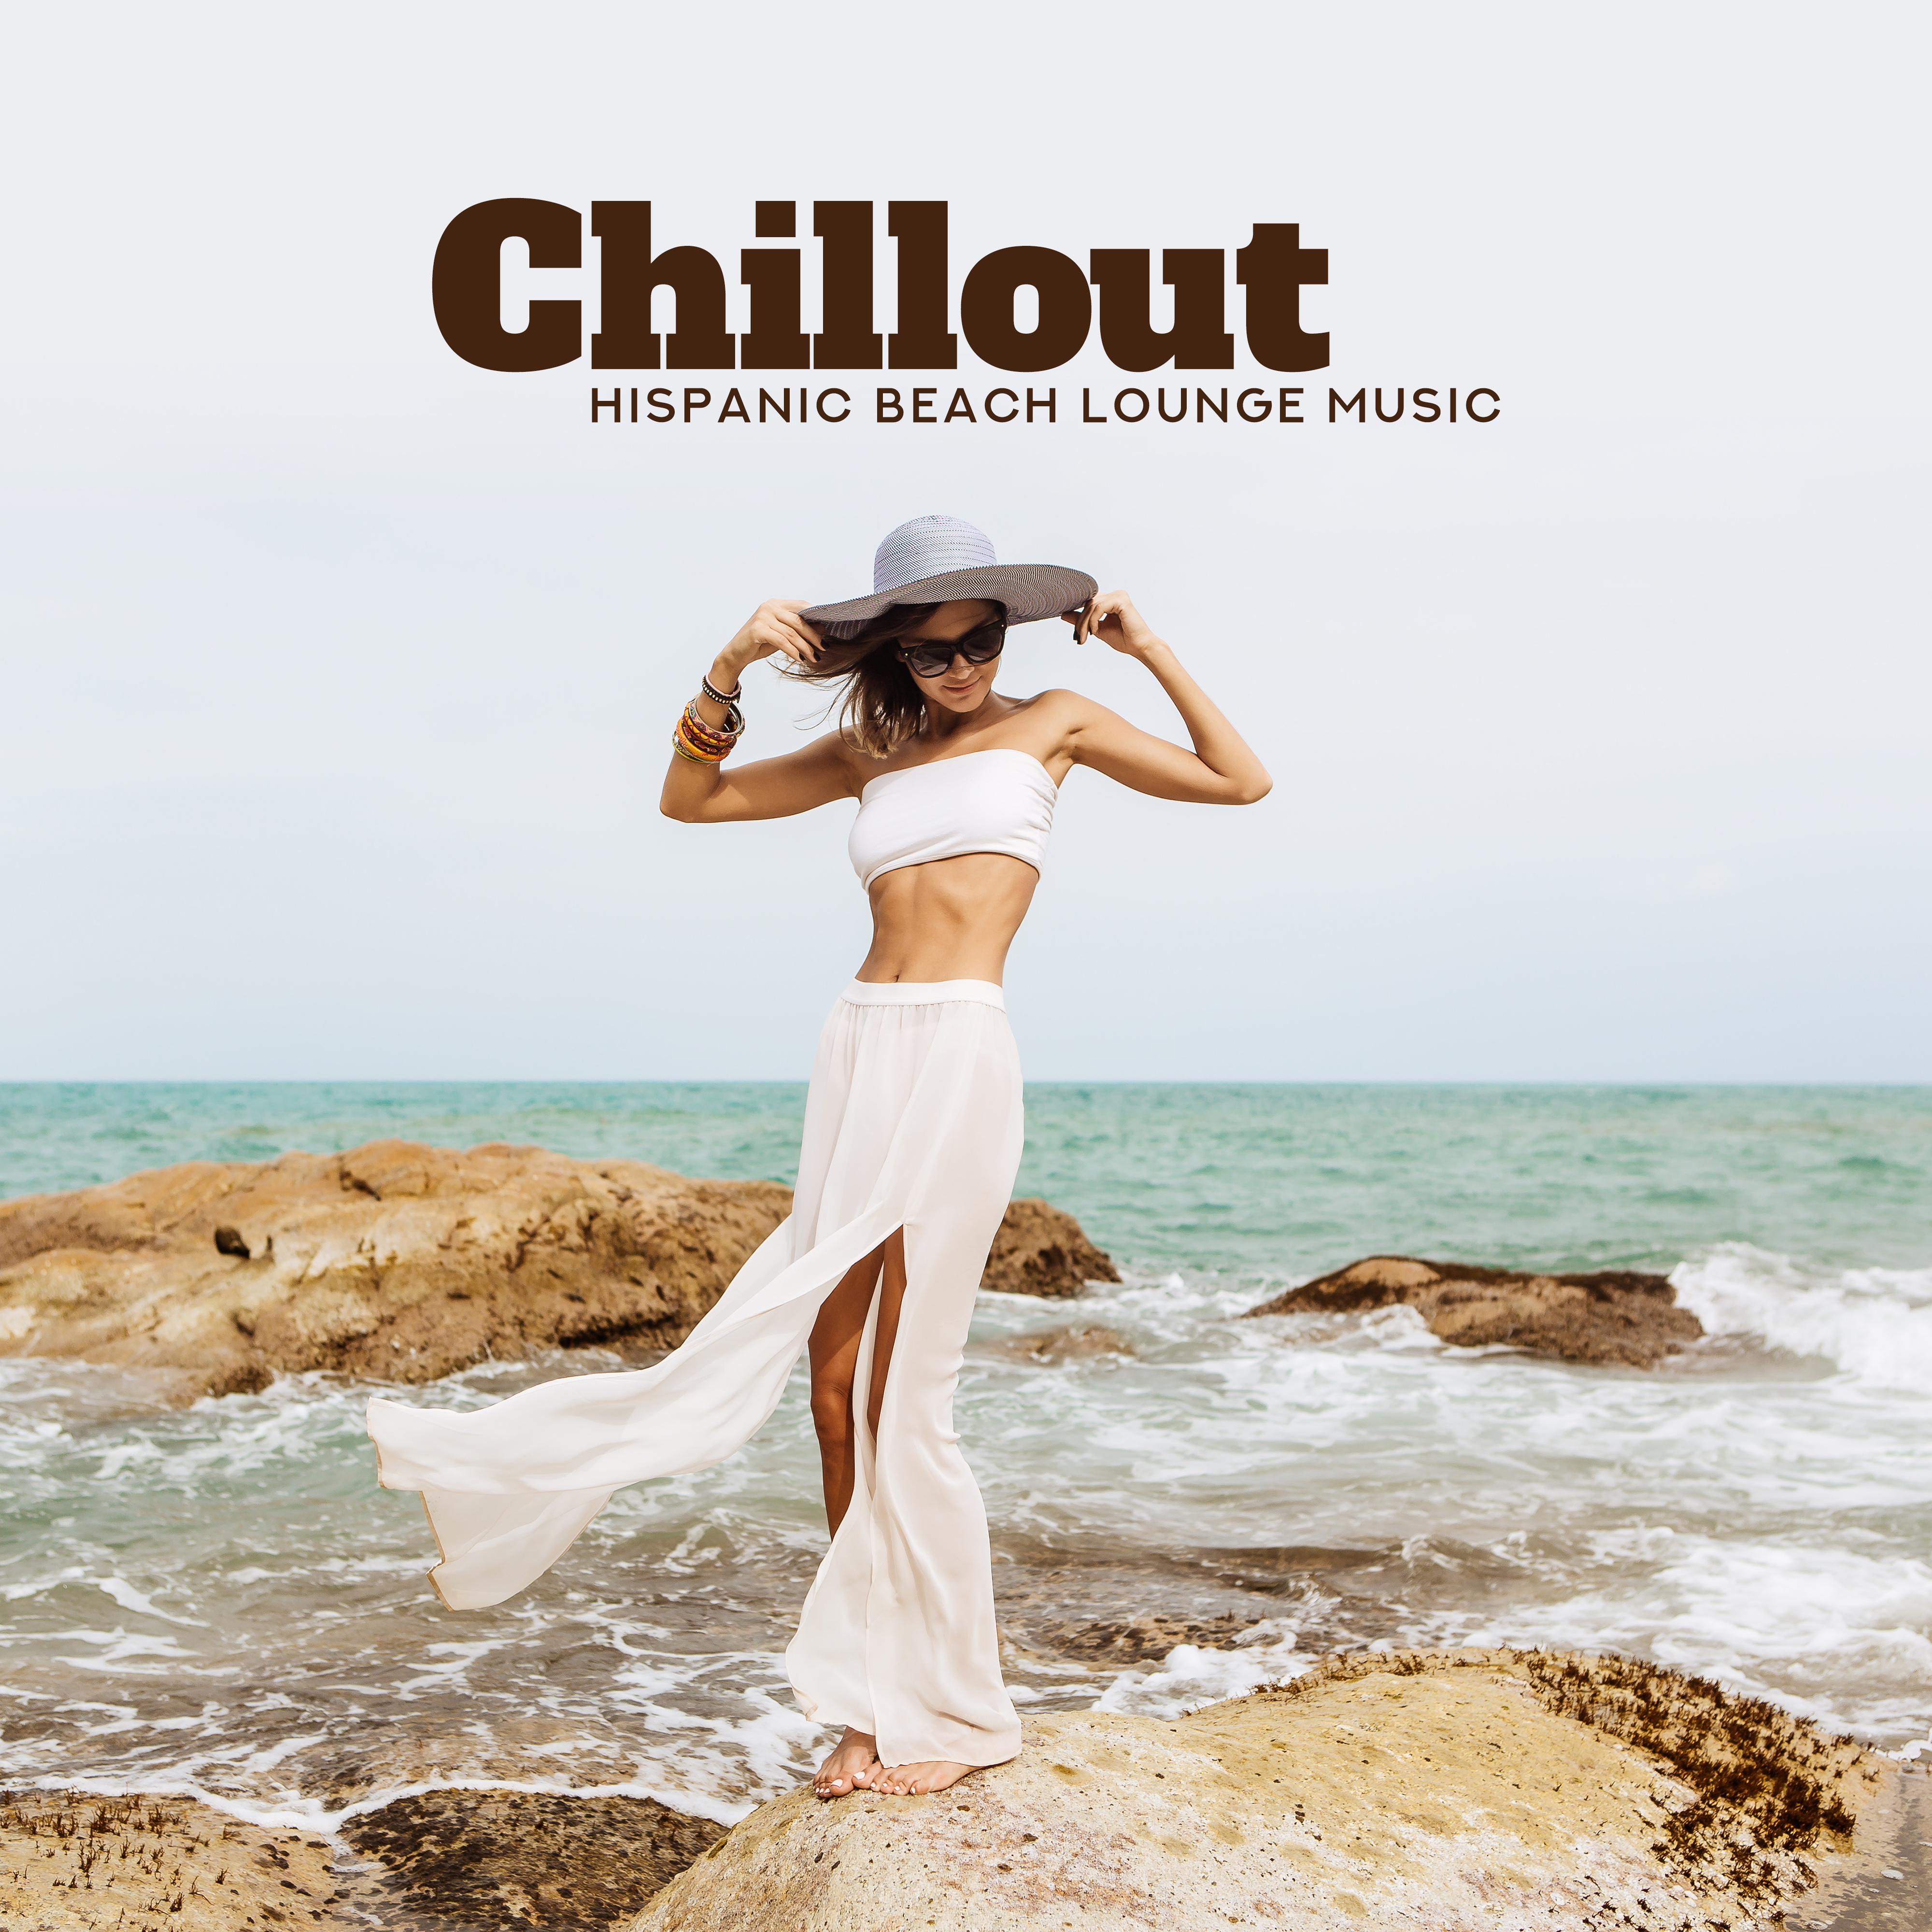 Chillout Hispanic Beach Lounge Music